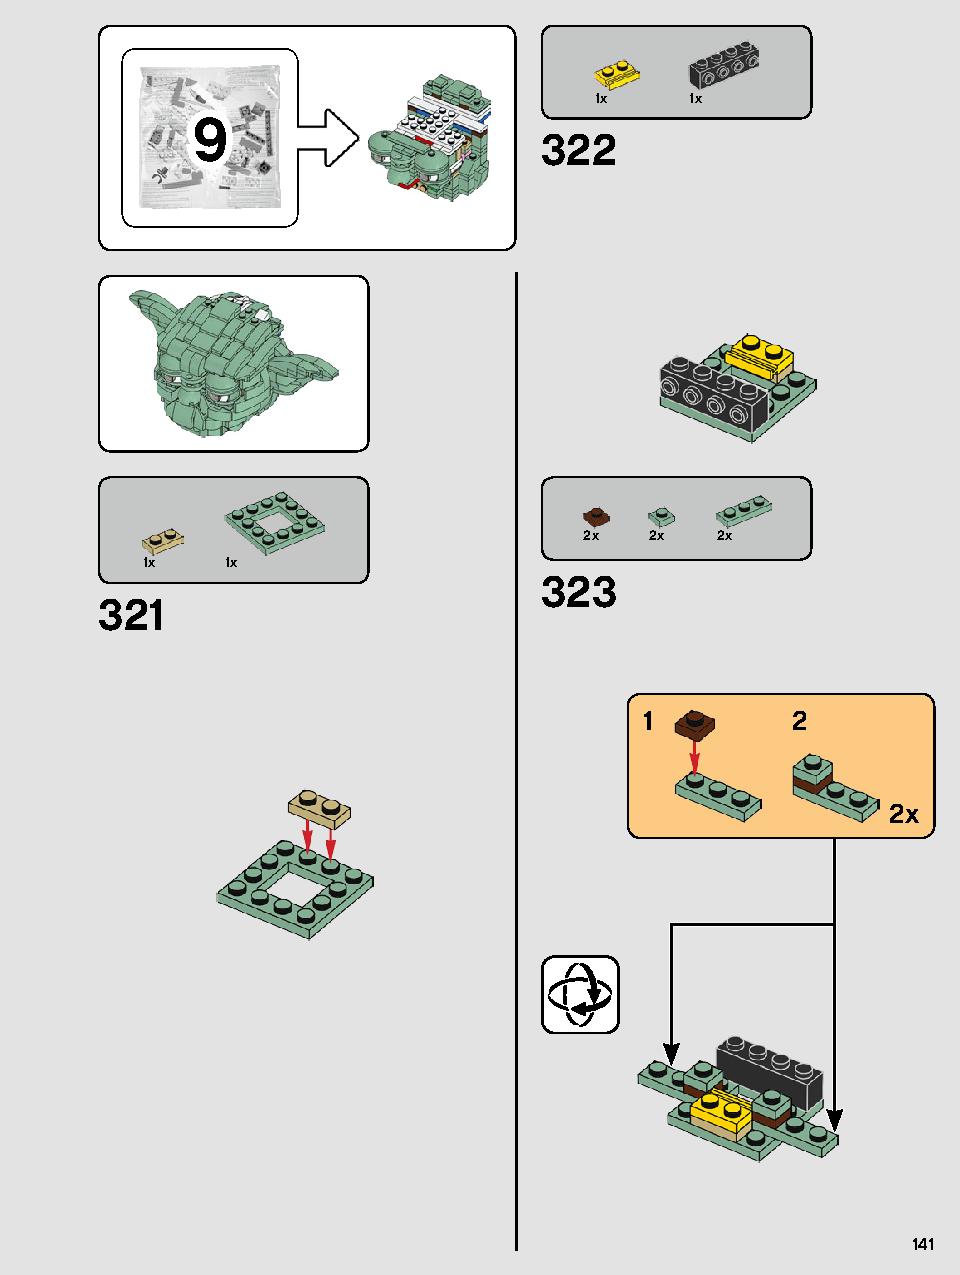 ヨーダ™ 75255 レゴの商品情報 レゴの説明書・組立方法 141 page